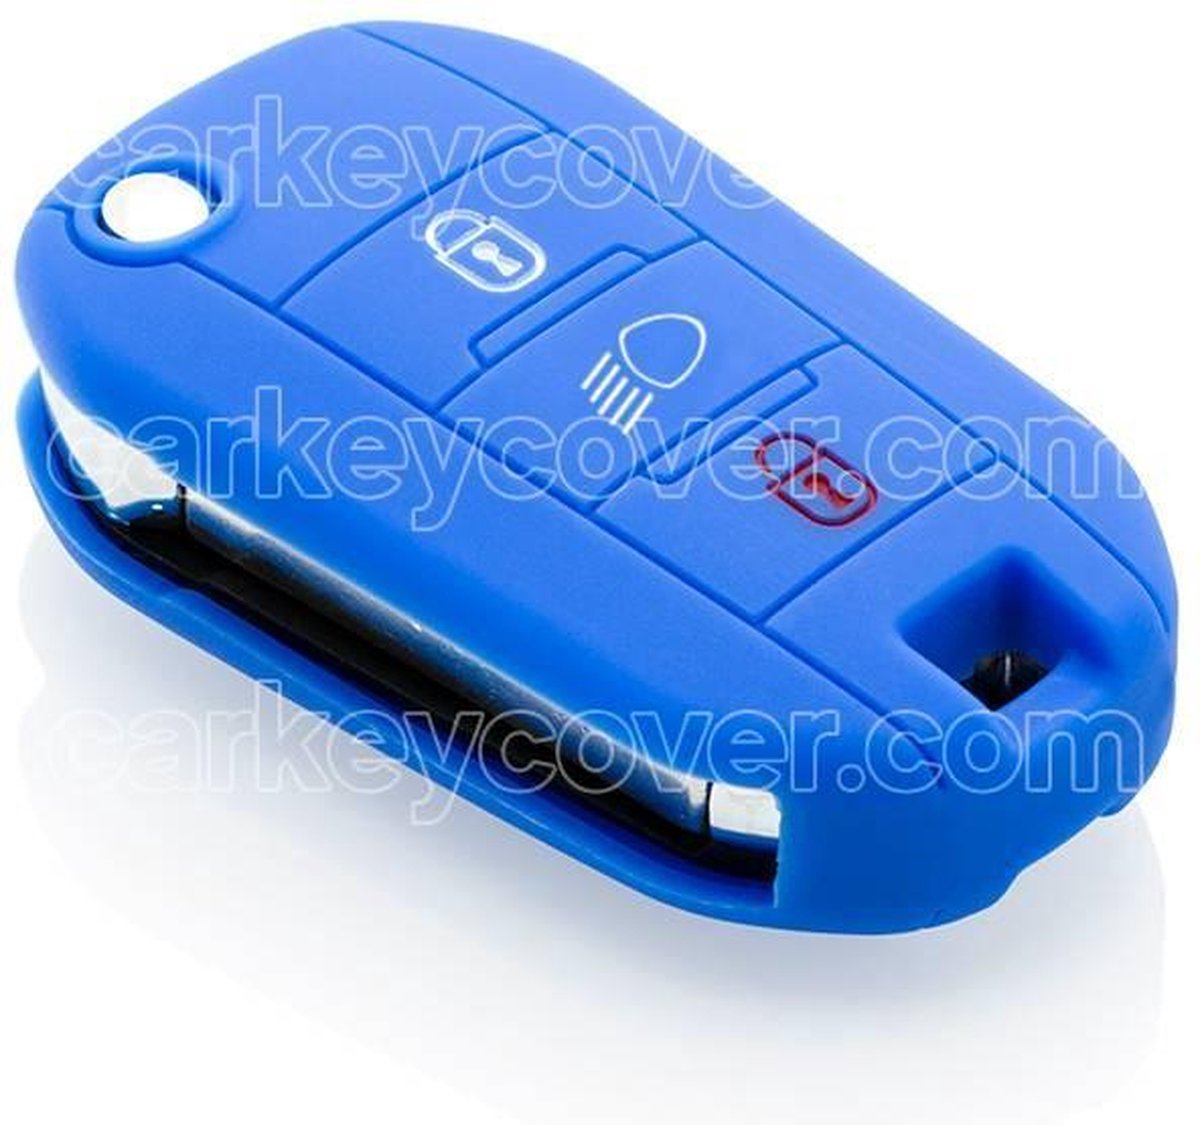 Couvre-clé Peugeot - Noir / Couvre-clé Silicone / Housse de protection clé  de voiture